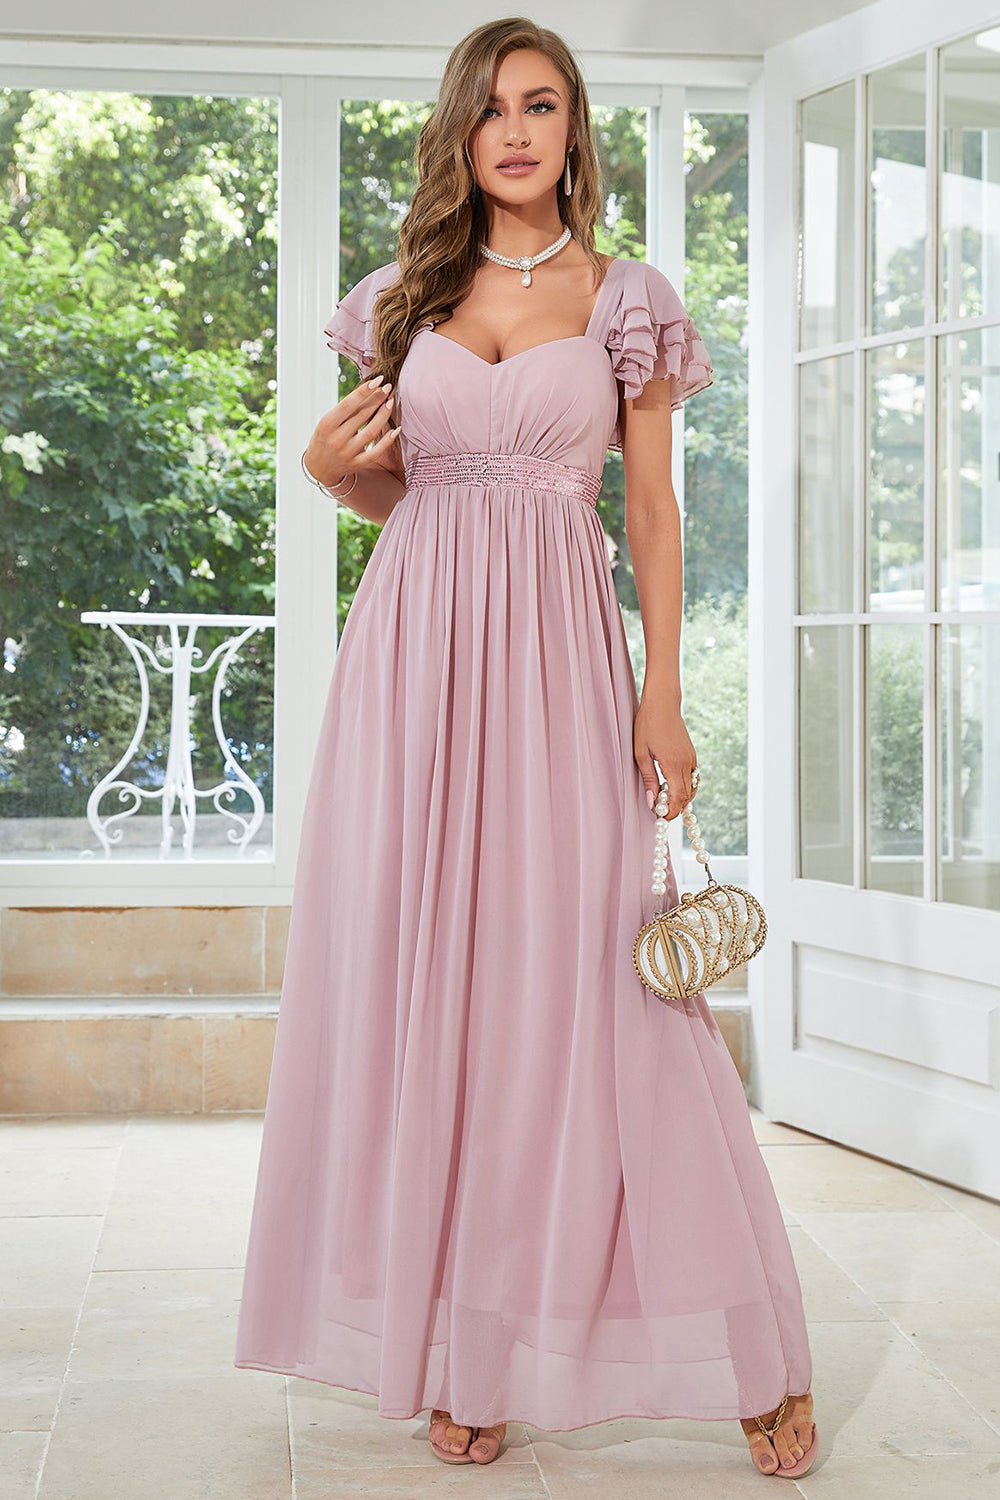 Chiffon Pink Wedding Party Dress with Ruffles